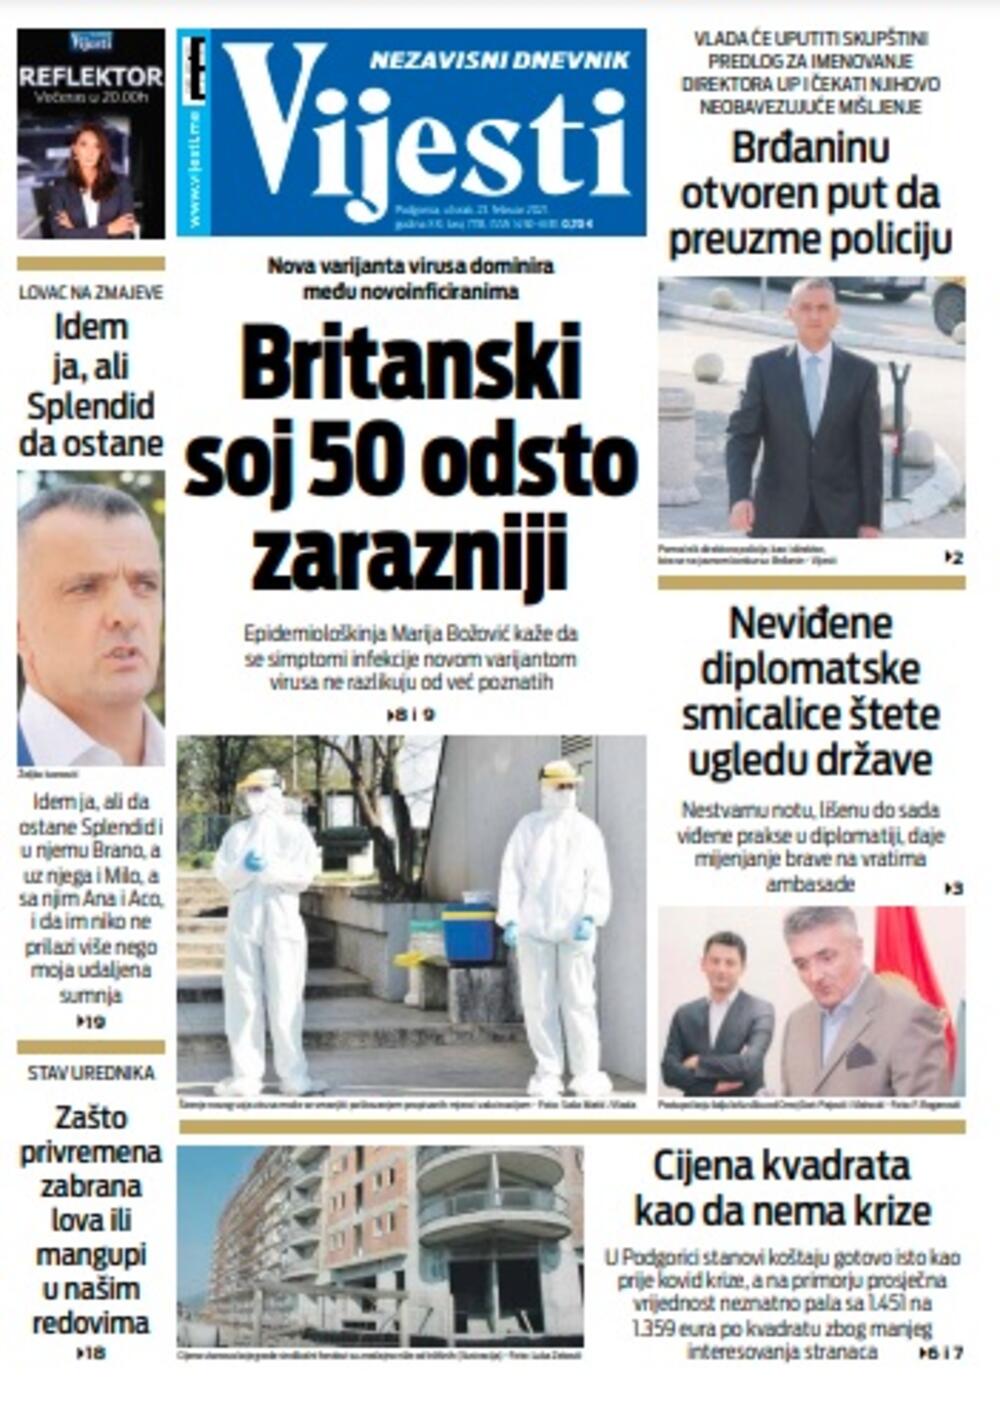 Naslovna strana "Vijesti" za utorak 23. februar 2021. godine, Foto: Vijesti